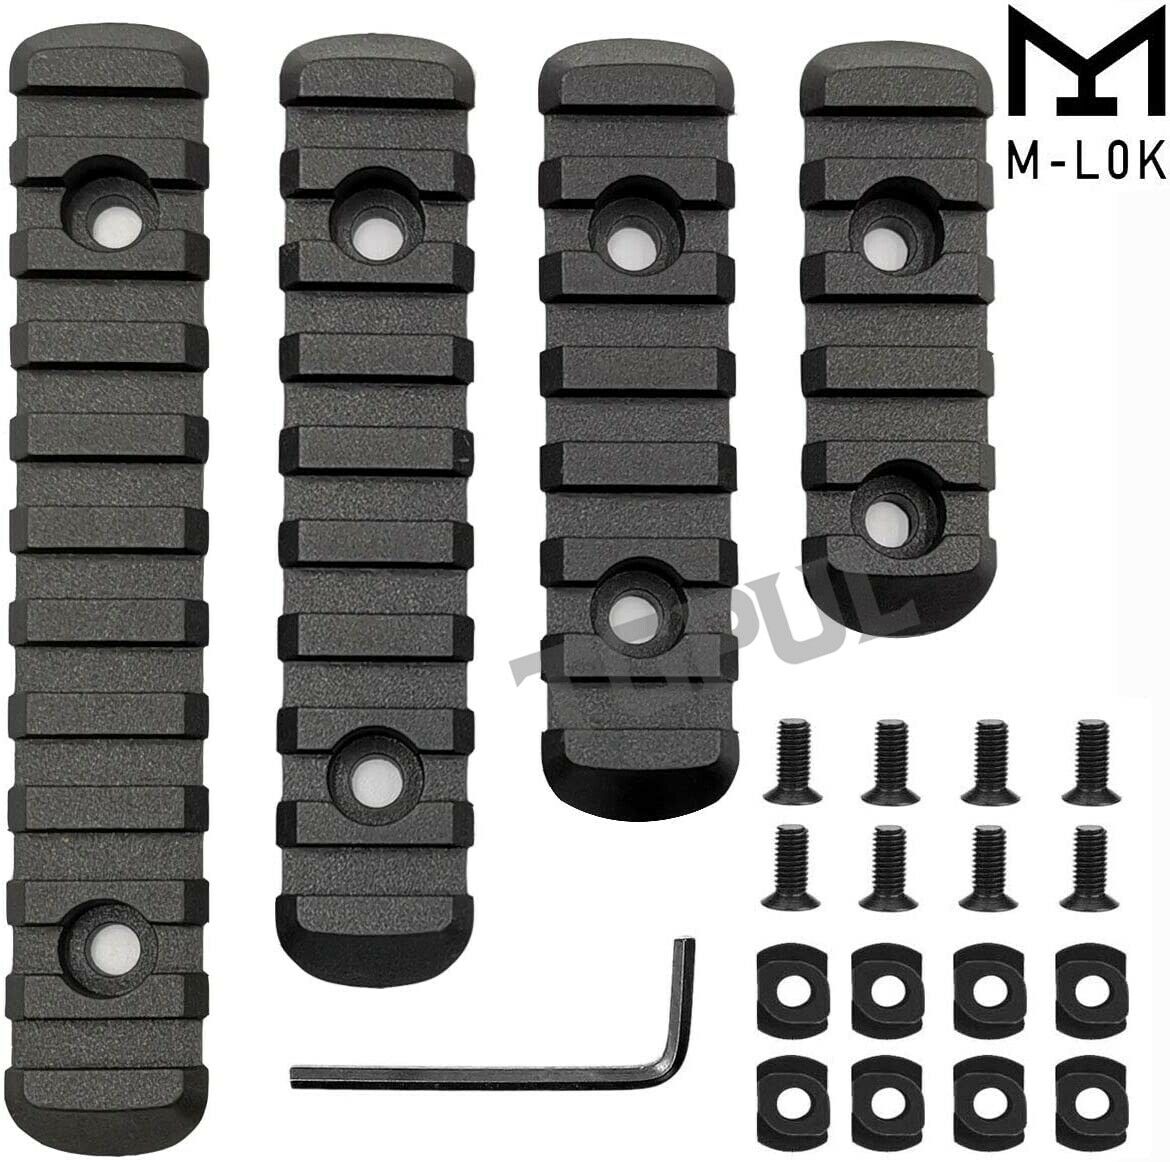 M-lok Polymer Picatinny Weaver Rail Section Set 5 7 9 11 Slot 4pcs 4 Rail Set